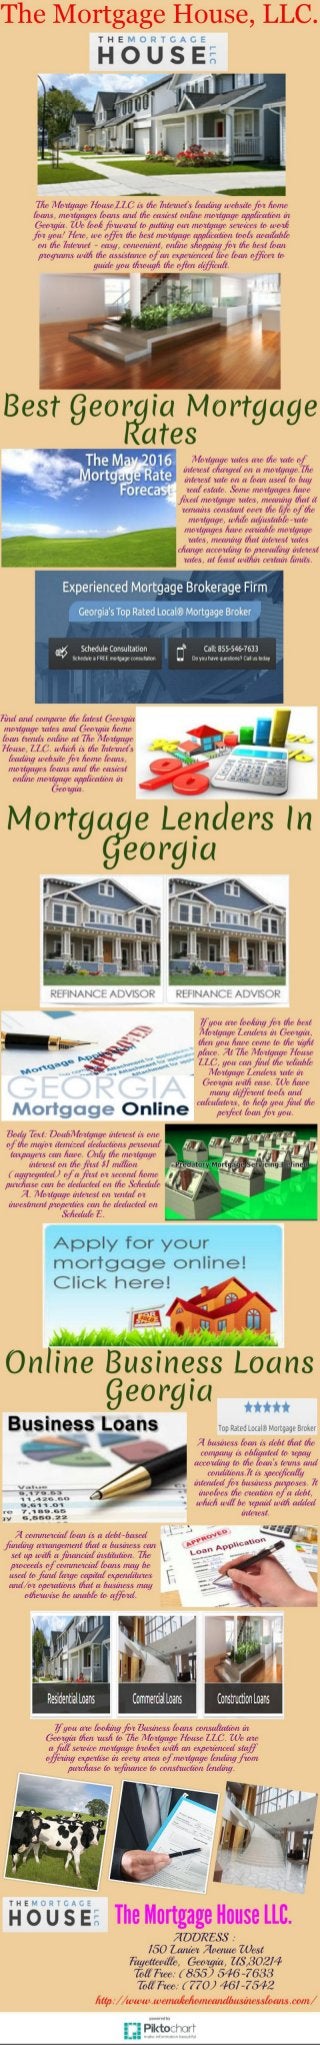 Mortgage Lenders In Georgia Online